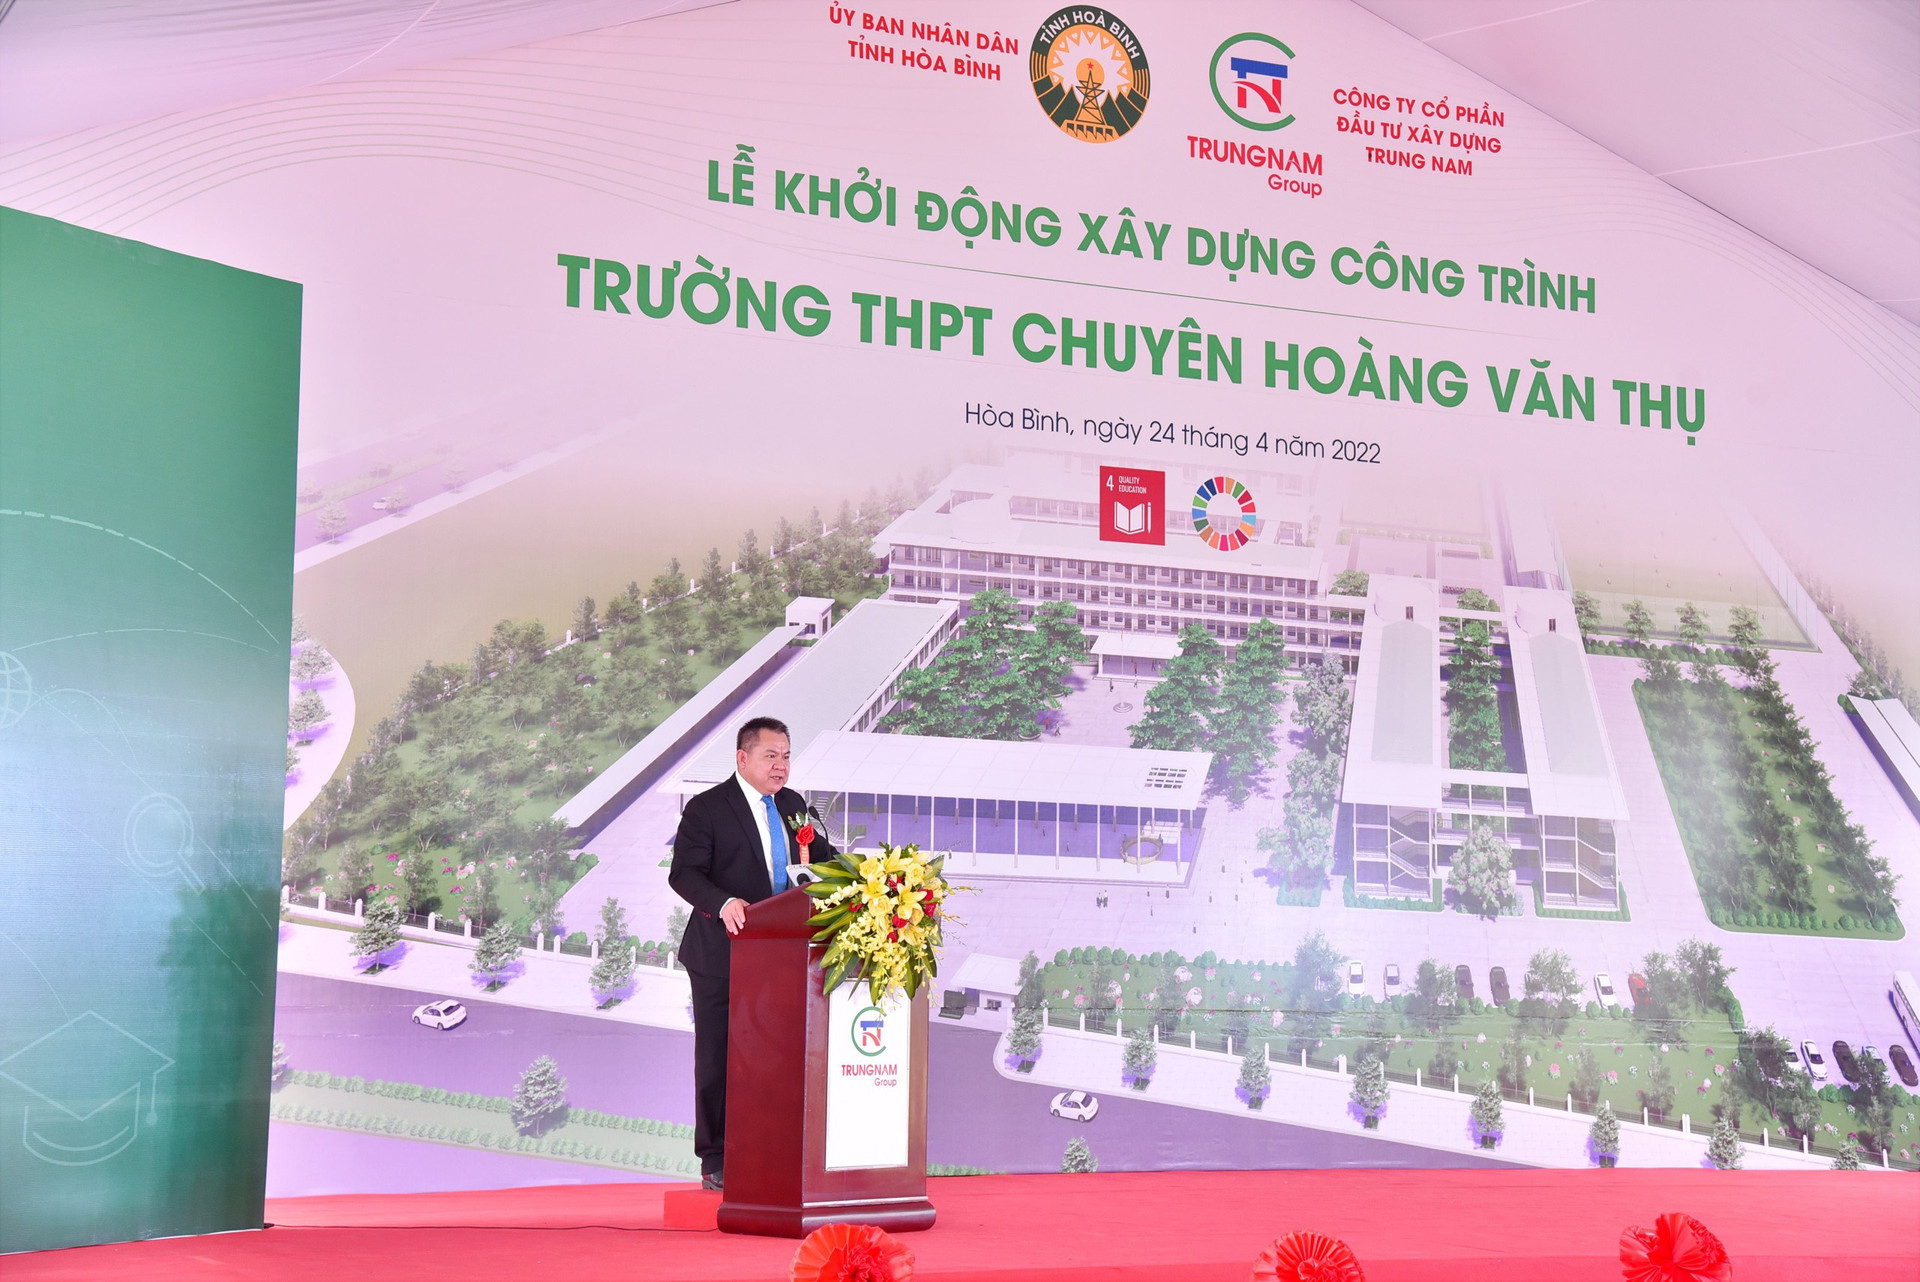 Ông Nguyễn Tâm Tiến – Tổng giám đốc Tập đoàn Trungnam Group phát biểu tại buổi lễ.